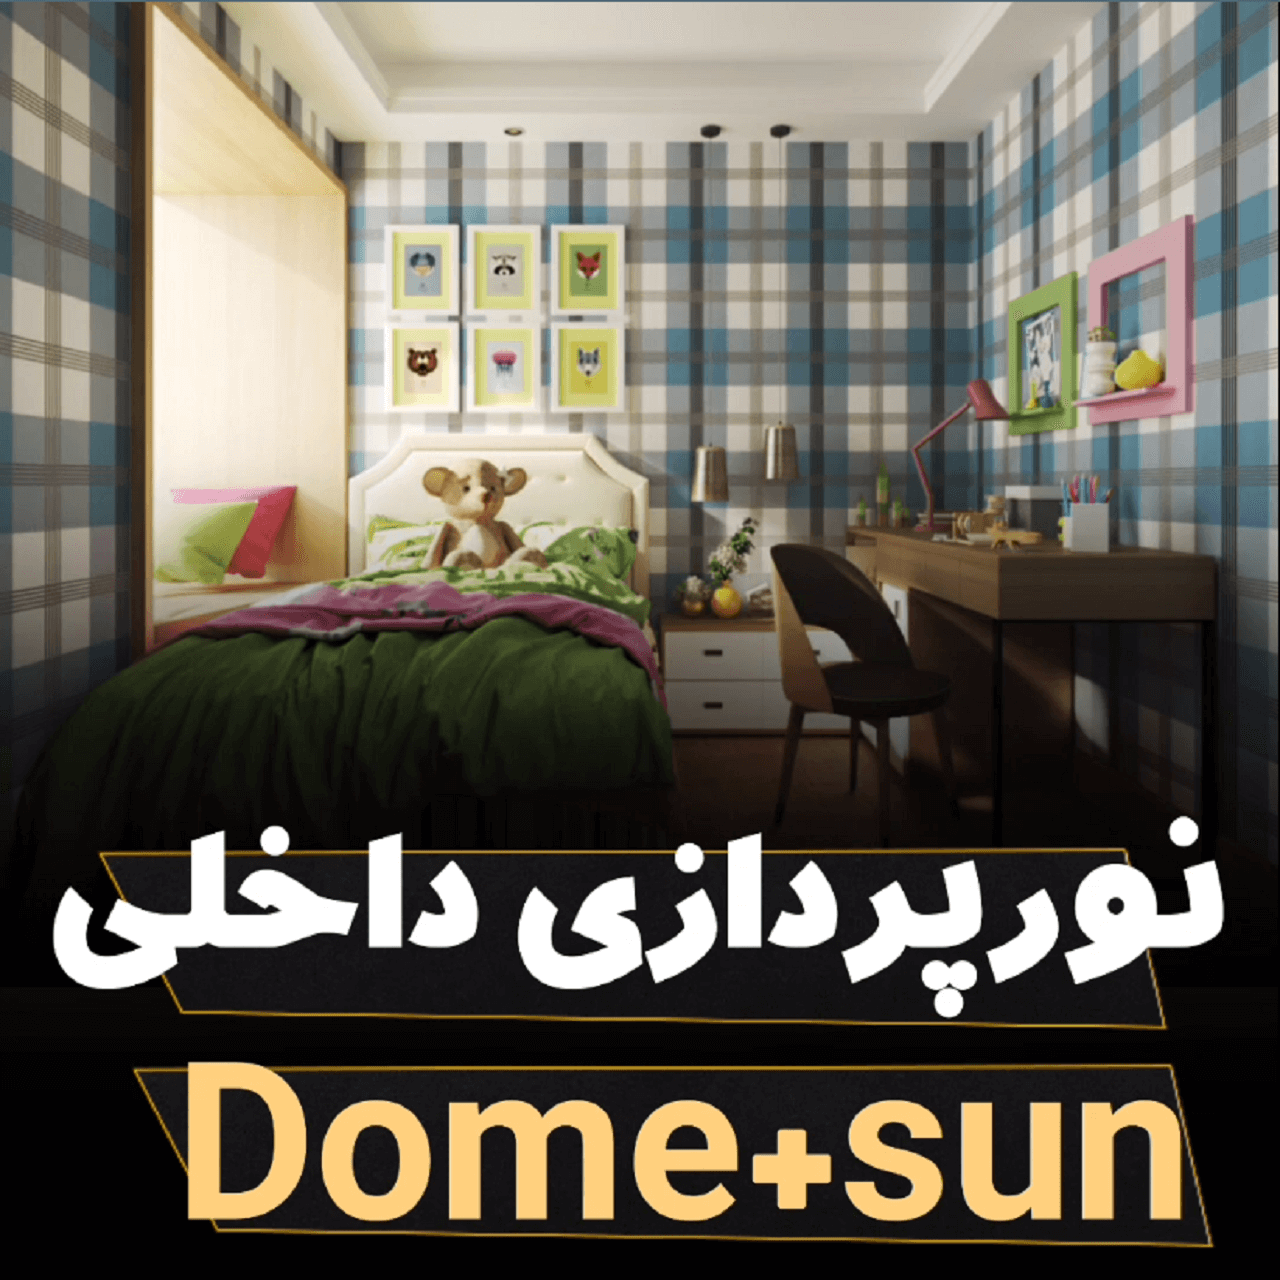 نورپردازی داخلی Dome+sun